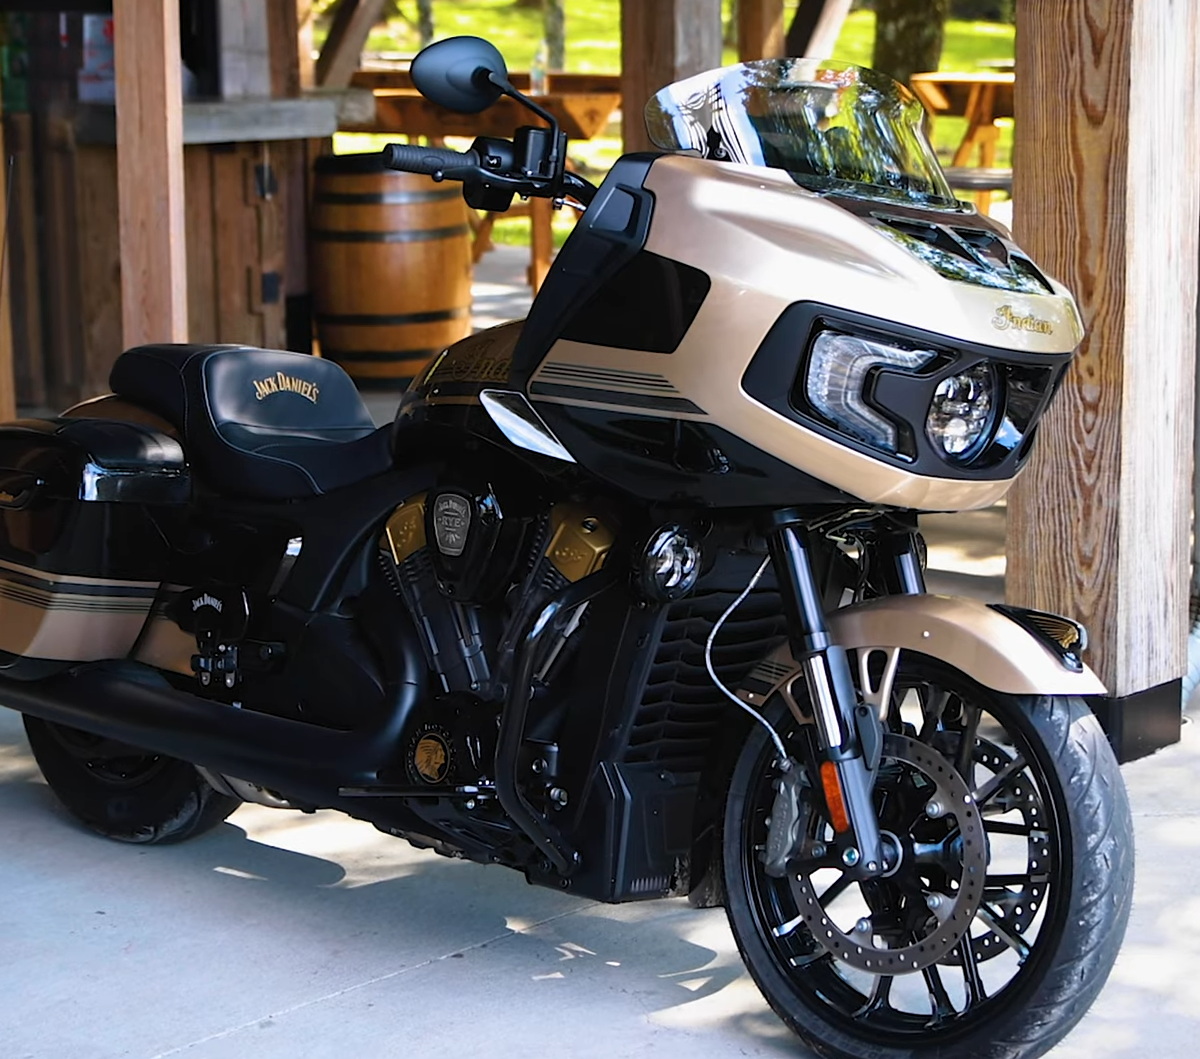 Indian представила новый мотоцикл Challenger Dark Horse ограниченной серии